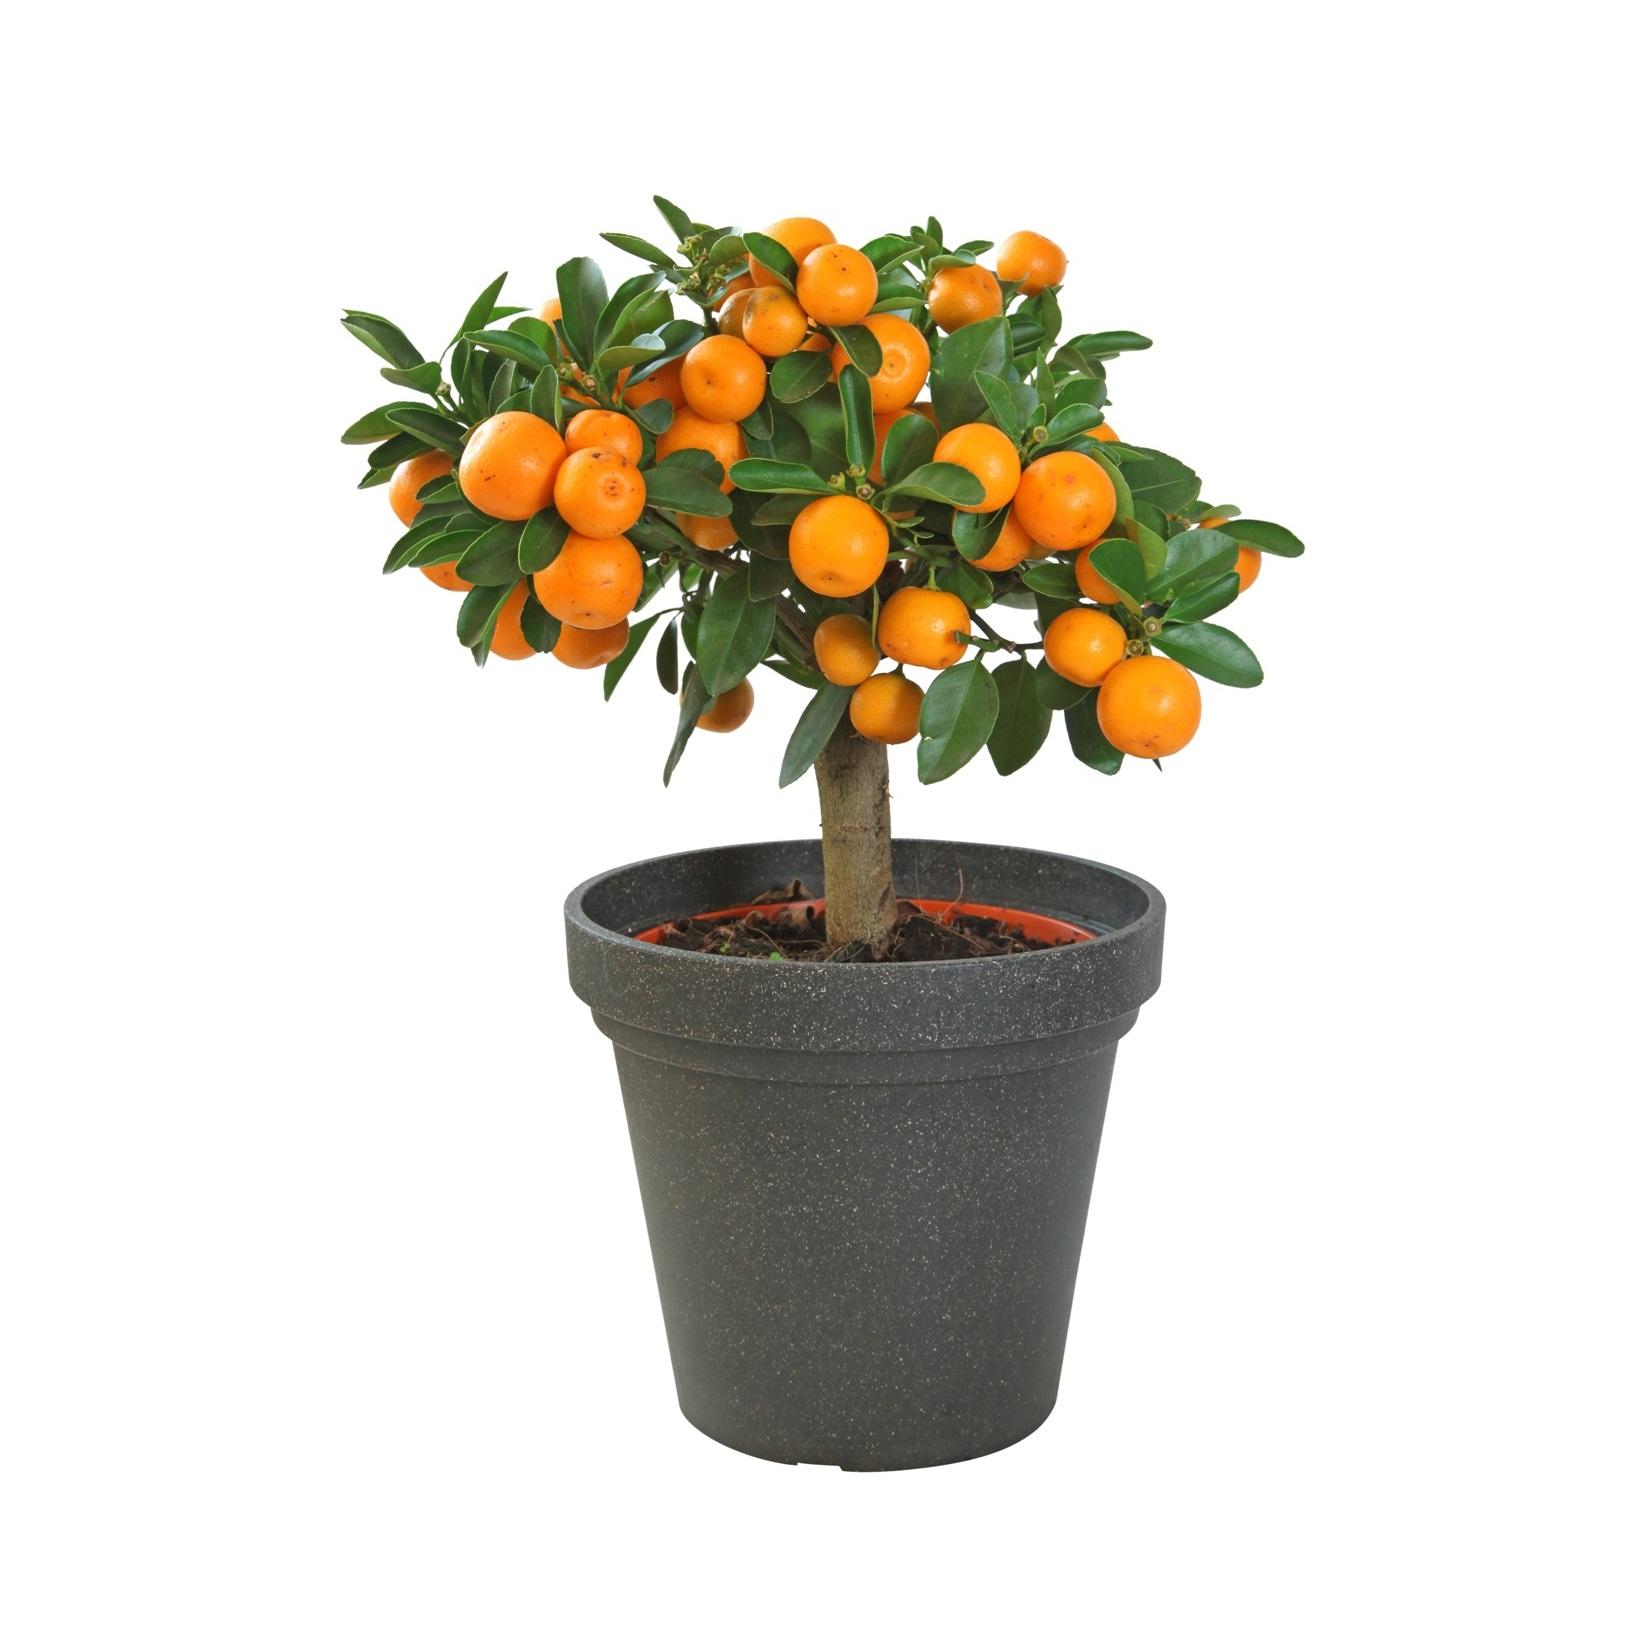 Мандарин банк. Мандариновое дерево в горшке. Citrus Dwarf Dwarf Citrus. Апельсин в горшке. Мини мандарин дерево.